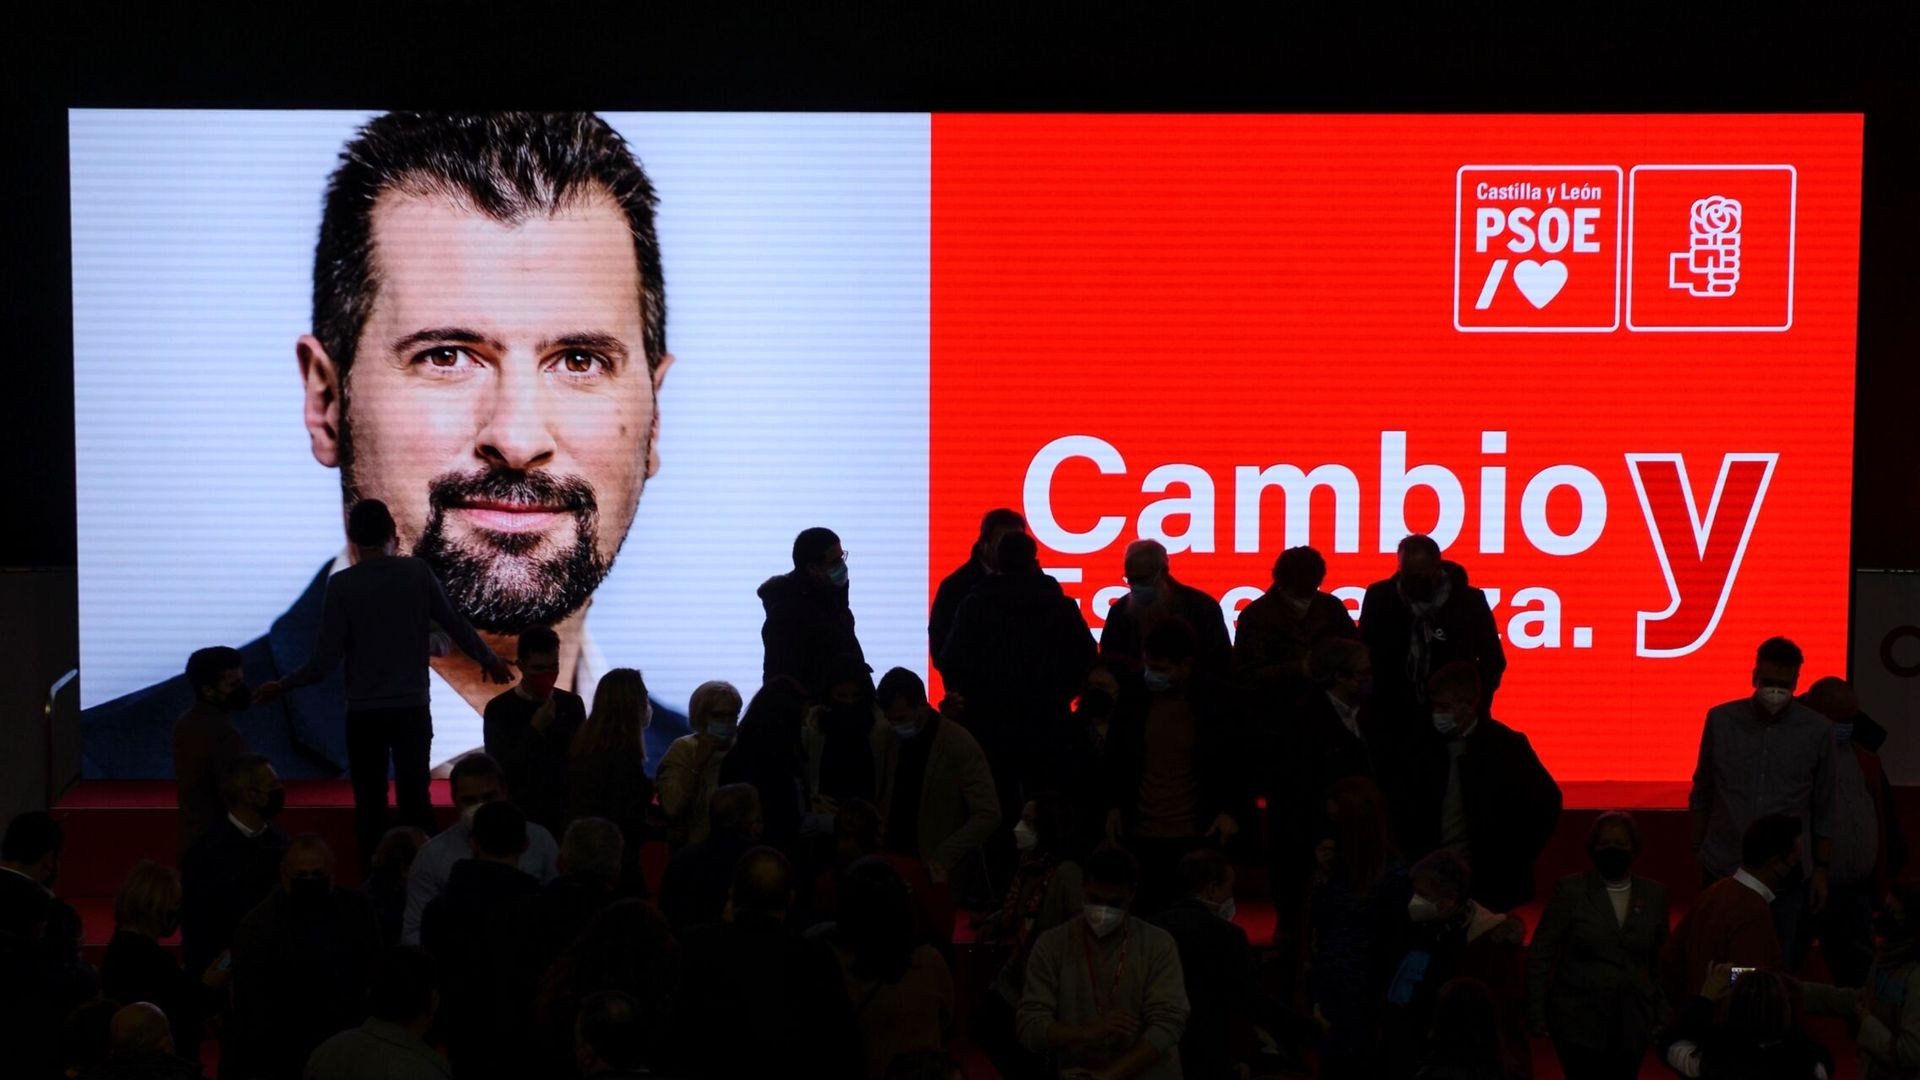 Acto de presentación del candidato socialista a la presidencia de la Junta de Castilla y León, Luis Tudanca. (EFE/Nacho Gallego)